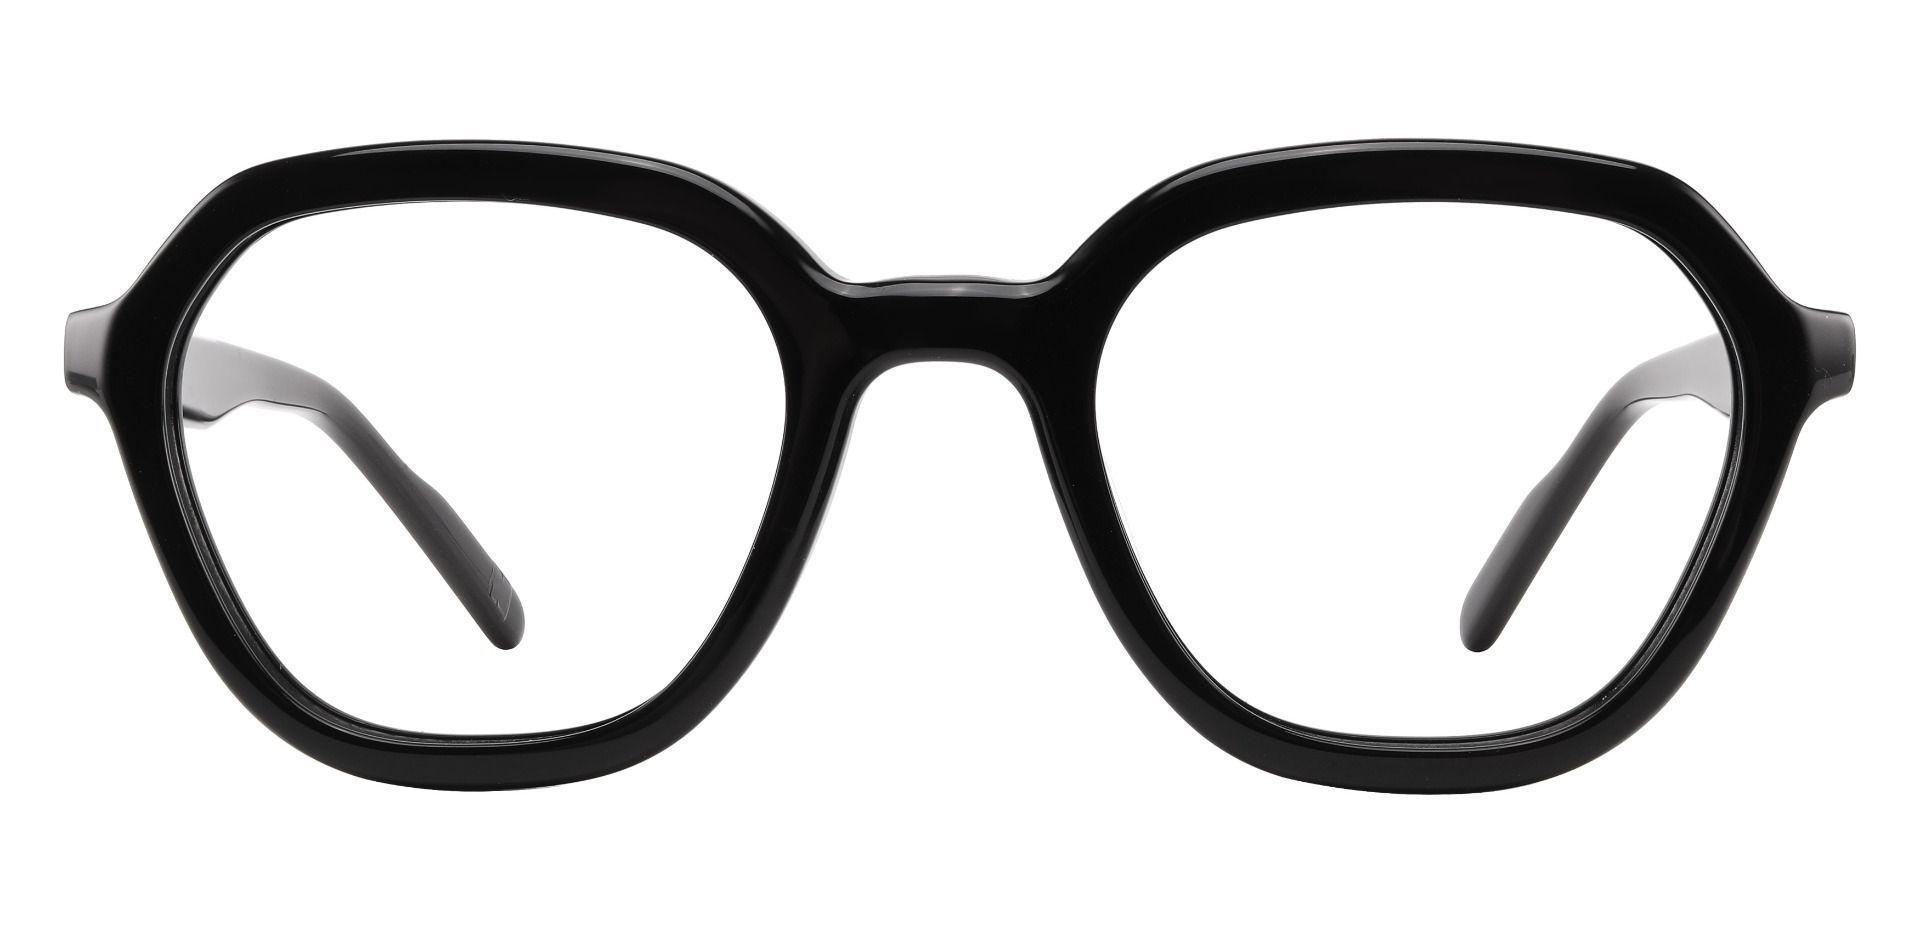 Mandarin Geometric Blue Light Blocking Glasses - Black | Men's ...